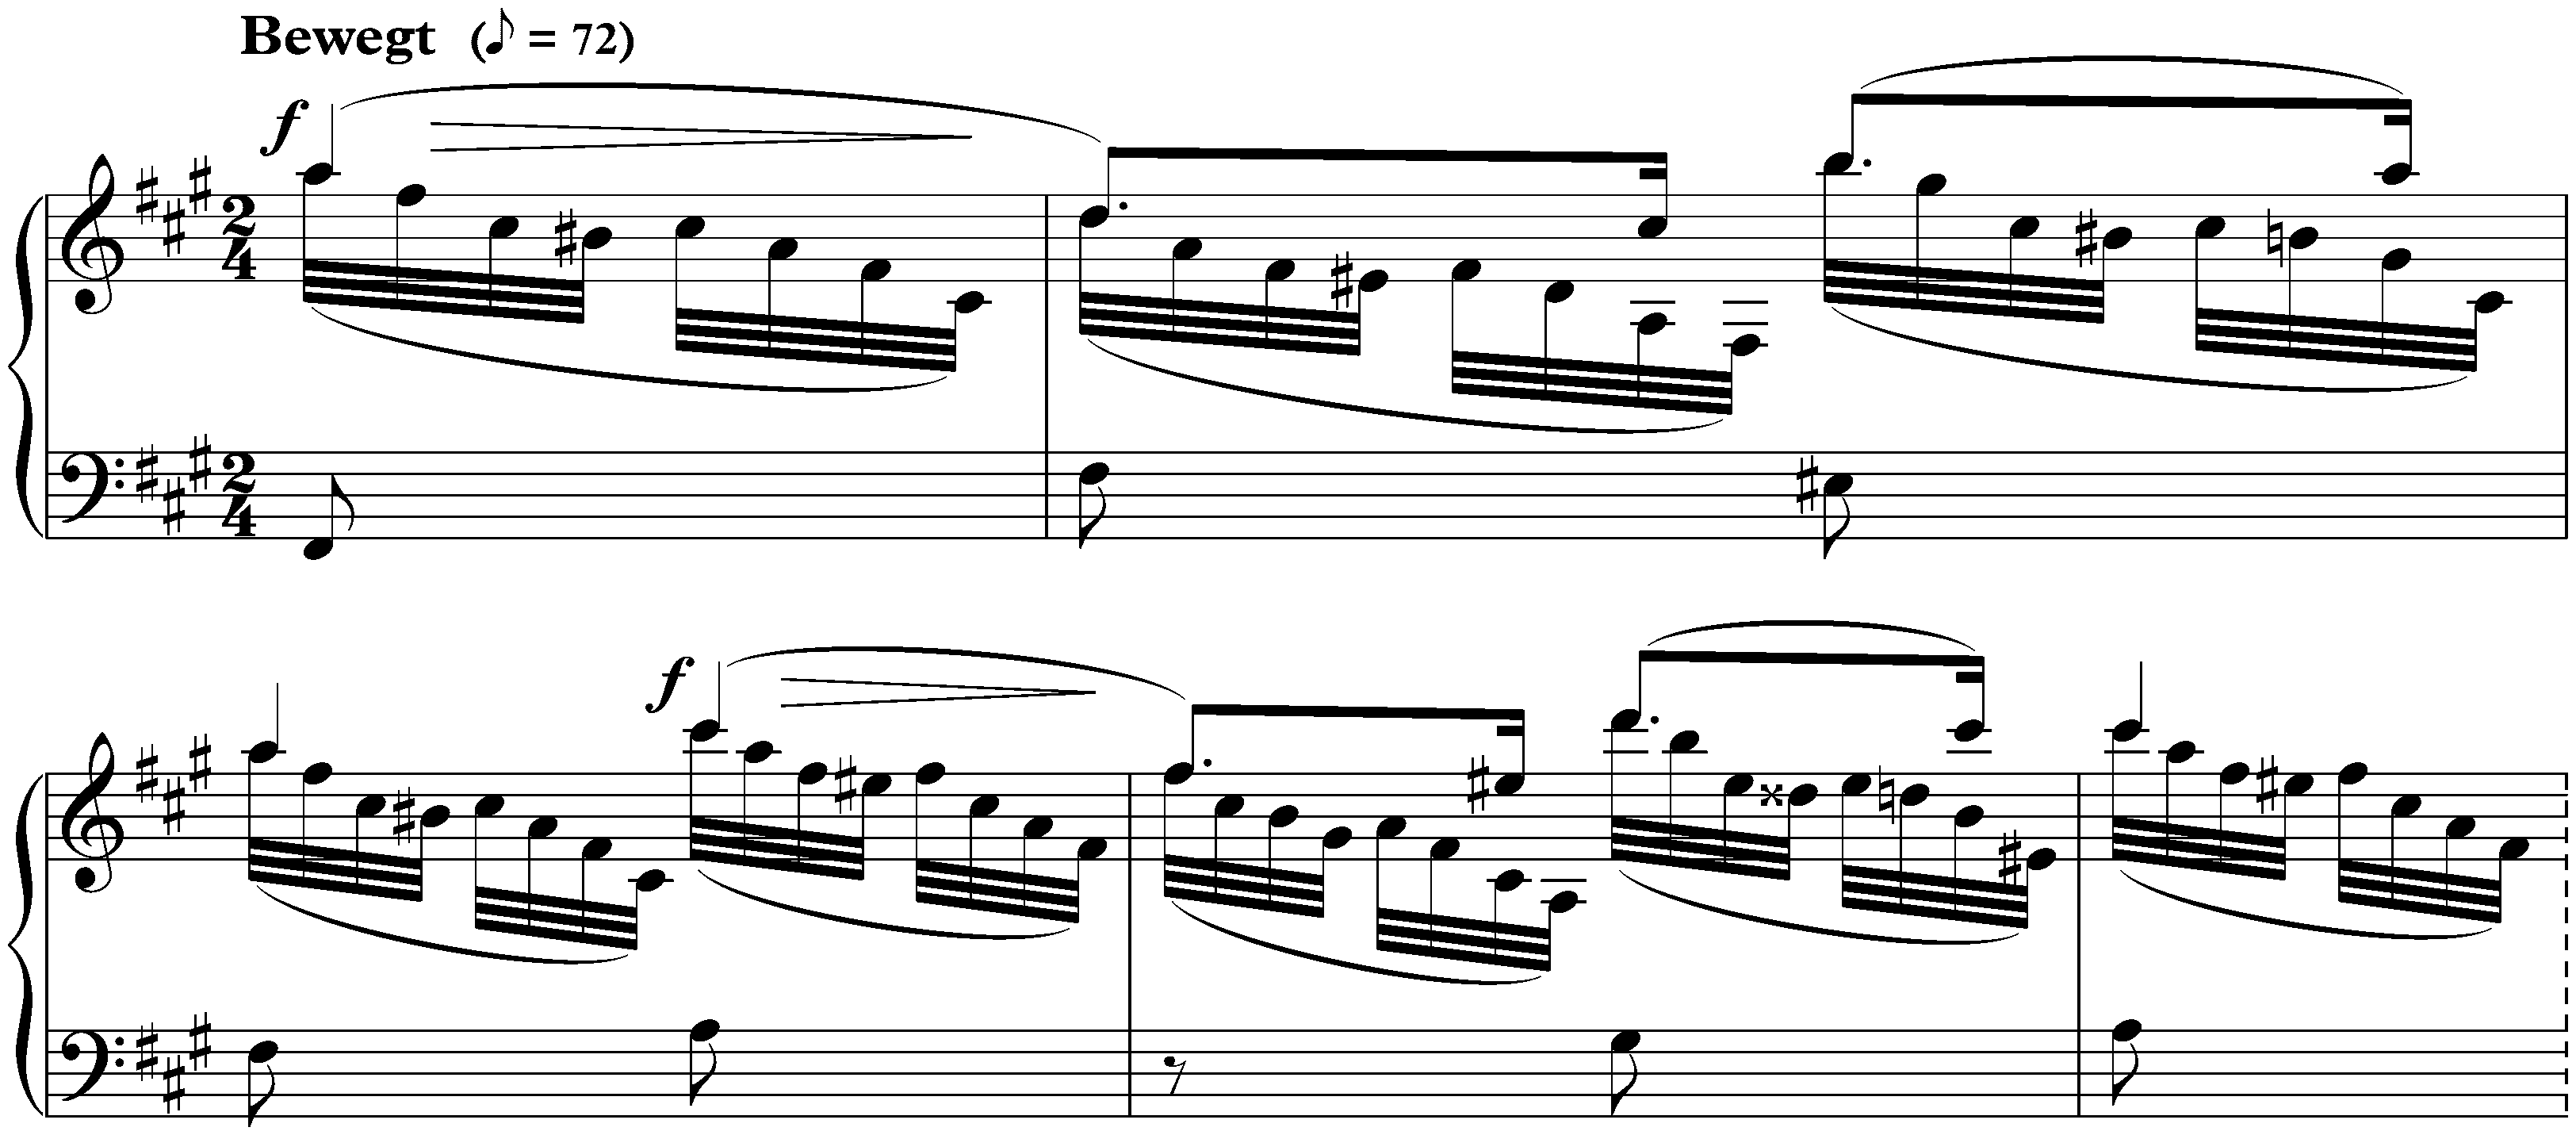 Gesänge der Frühe, op. 133; 4. Bewegt